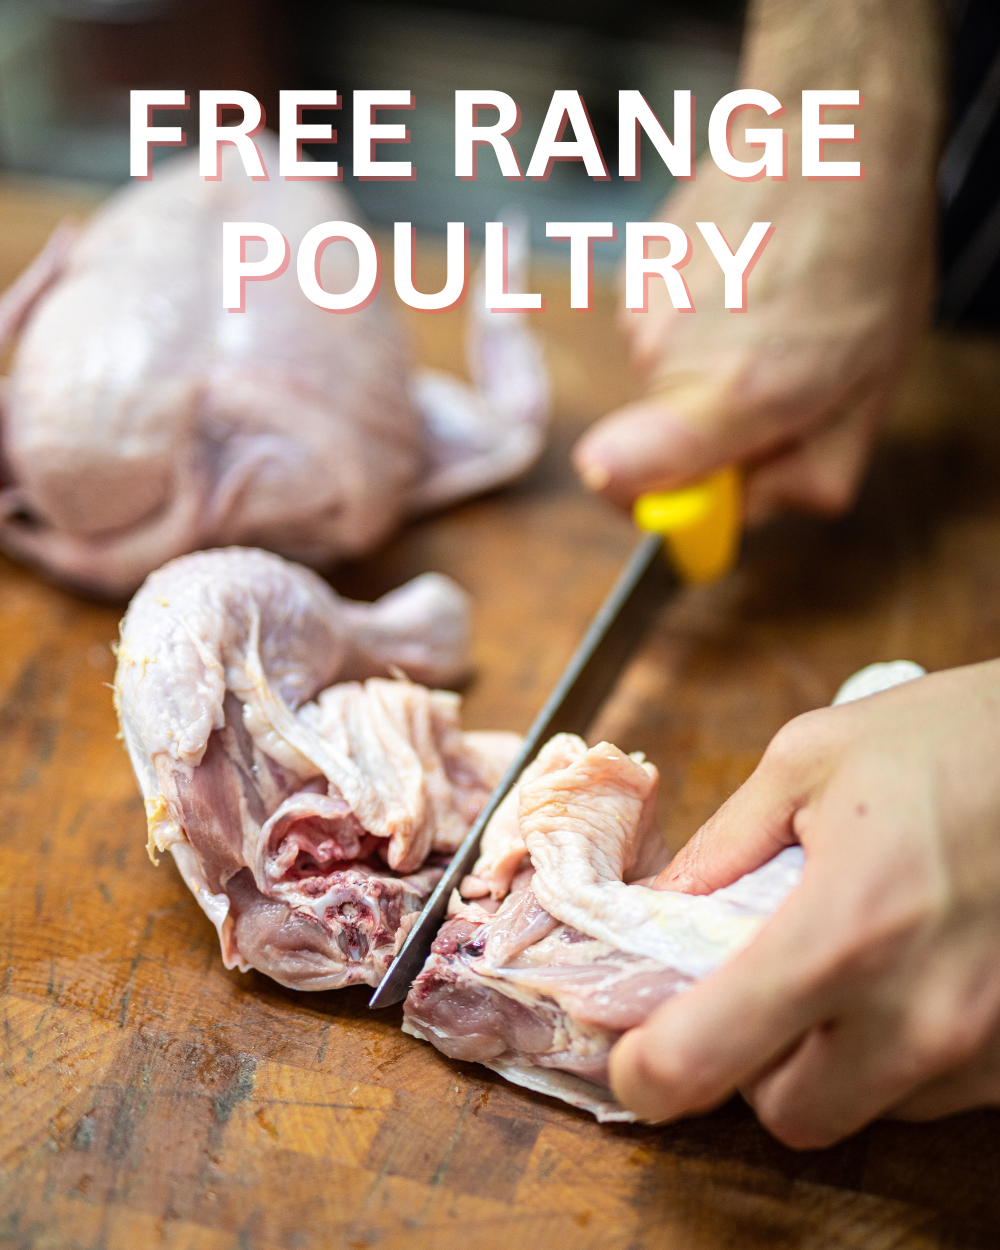 FREE RANGE POULTRY Free range poultry from the Štěpánovsko farm